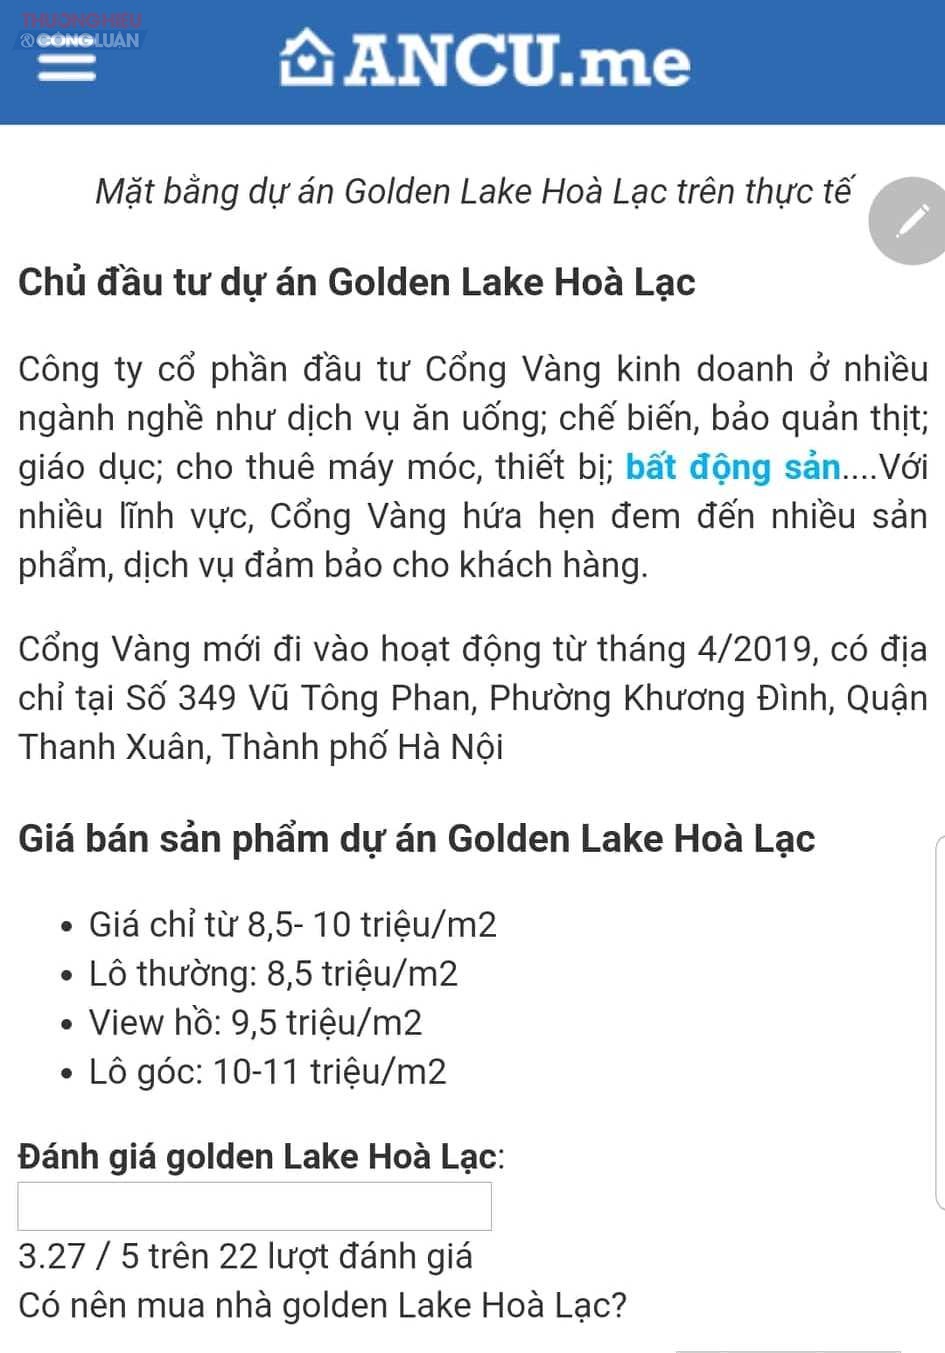 Dự án Golden Lake Hòa Lạc (Sơn Tây, Hà Nội) được giới thiệu rao bán trên nhiều trang mua - bán bất động sản (Ảnh chụp màn hình).